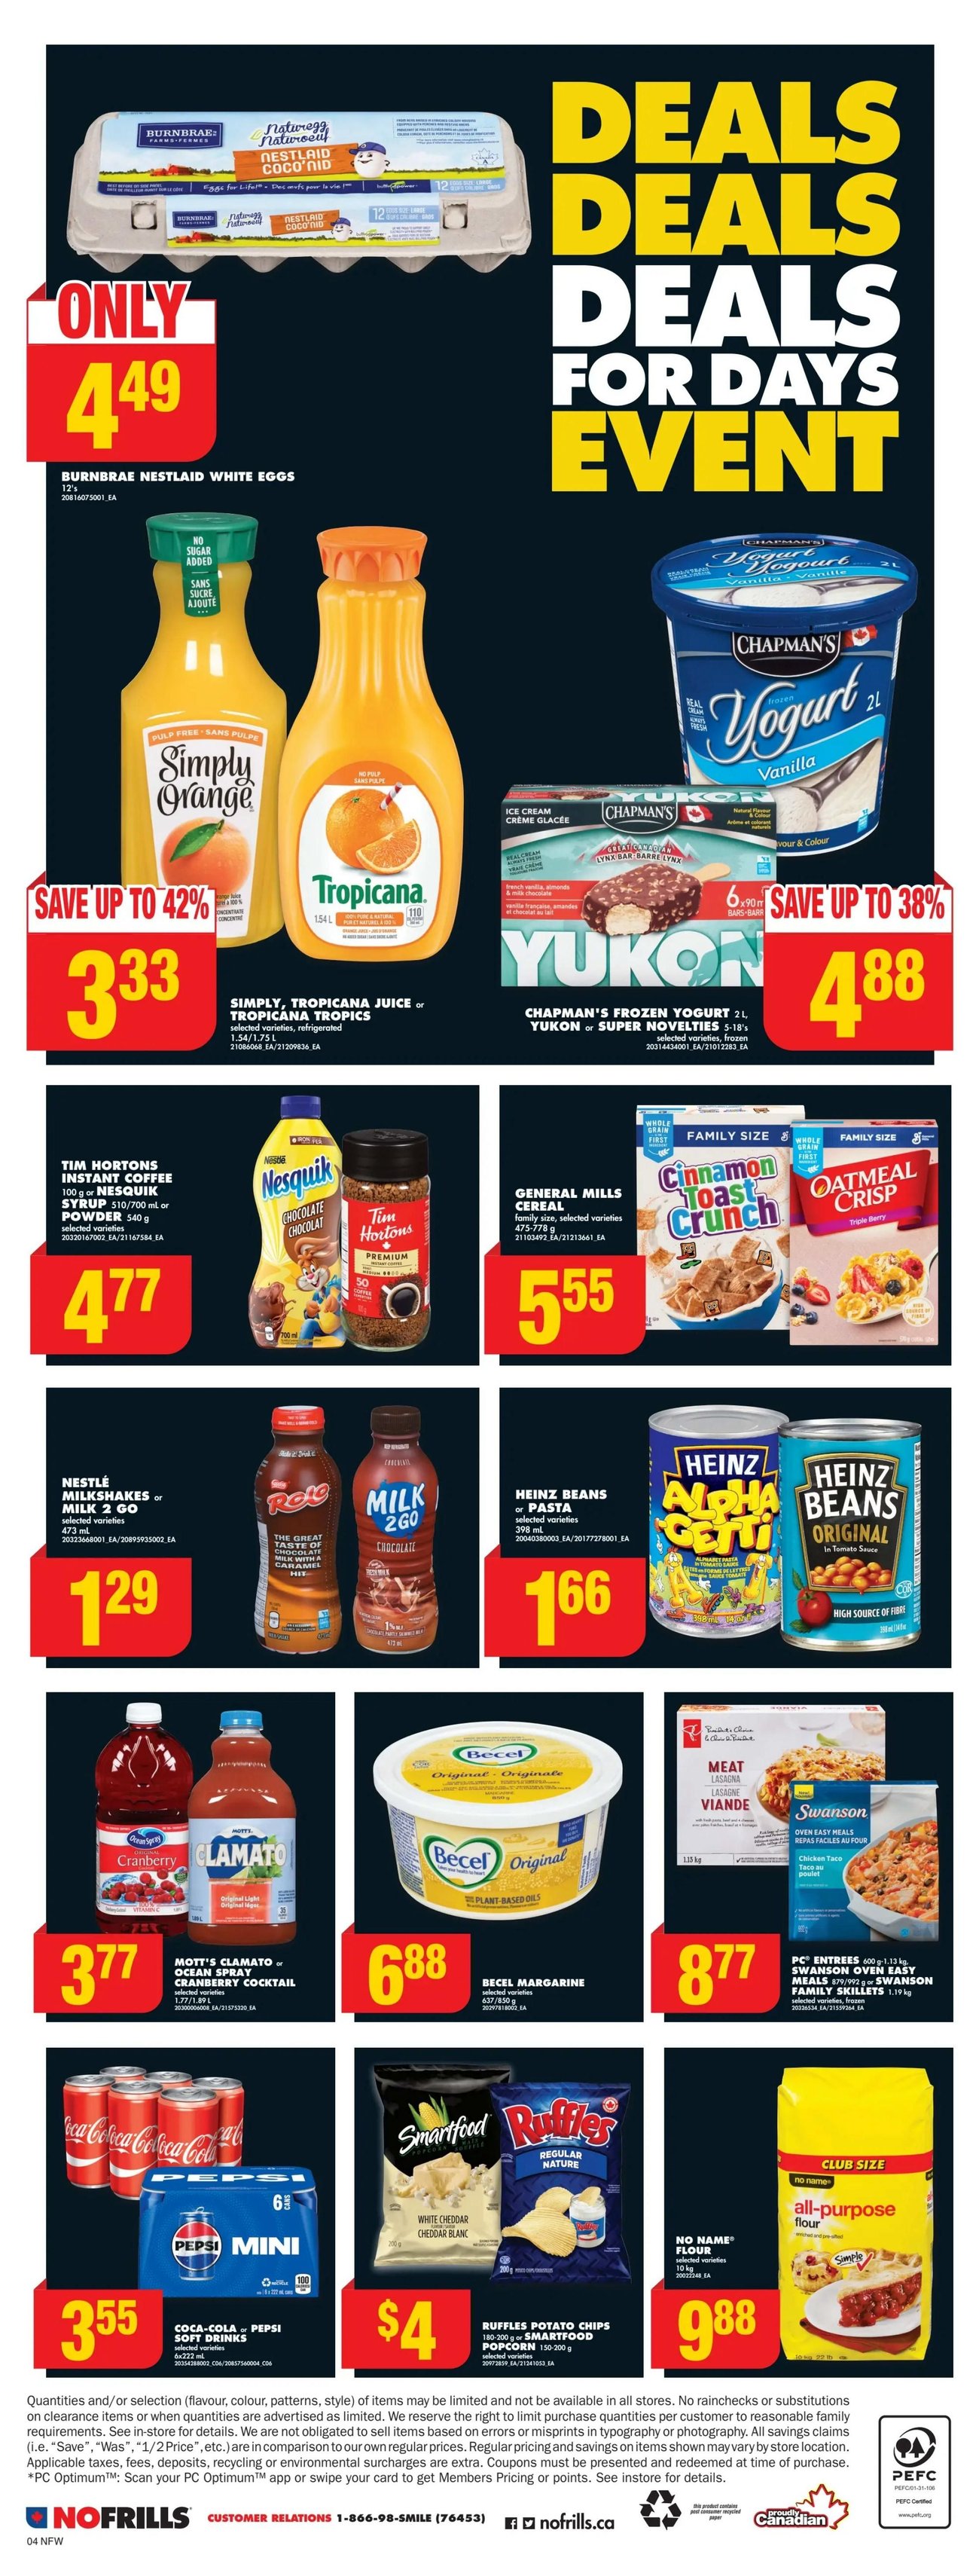 No Frills (Western Canada, Northern Ontario) - Weekly Flyer Specials - Page 5